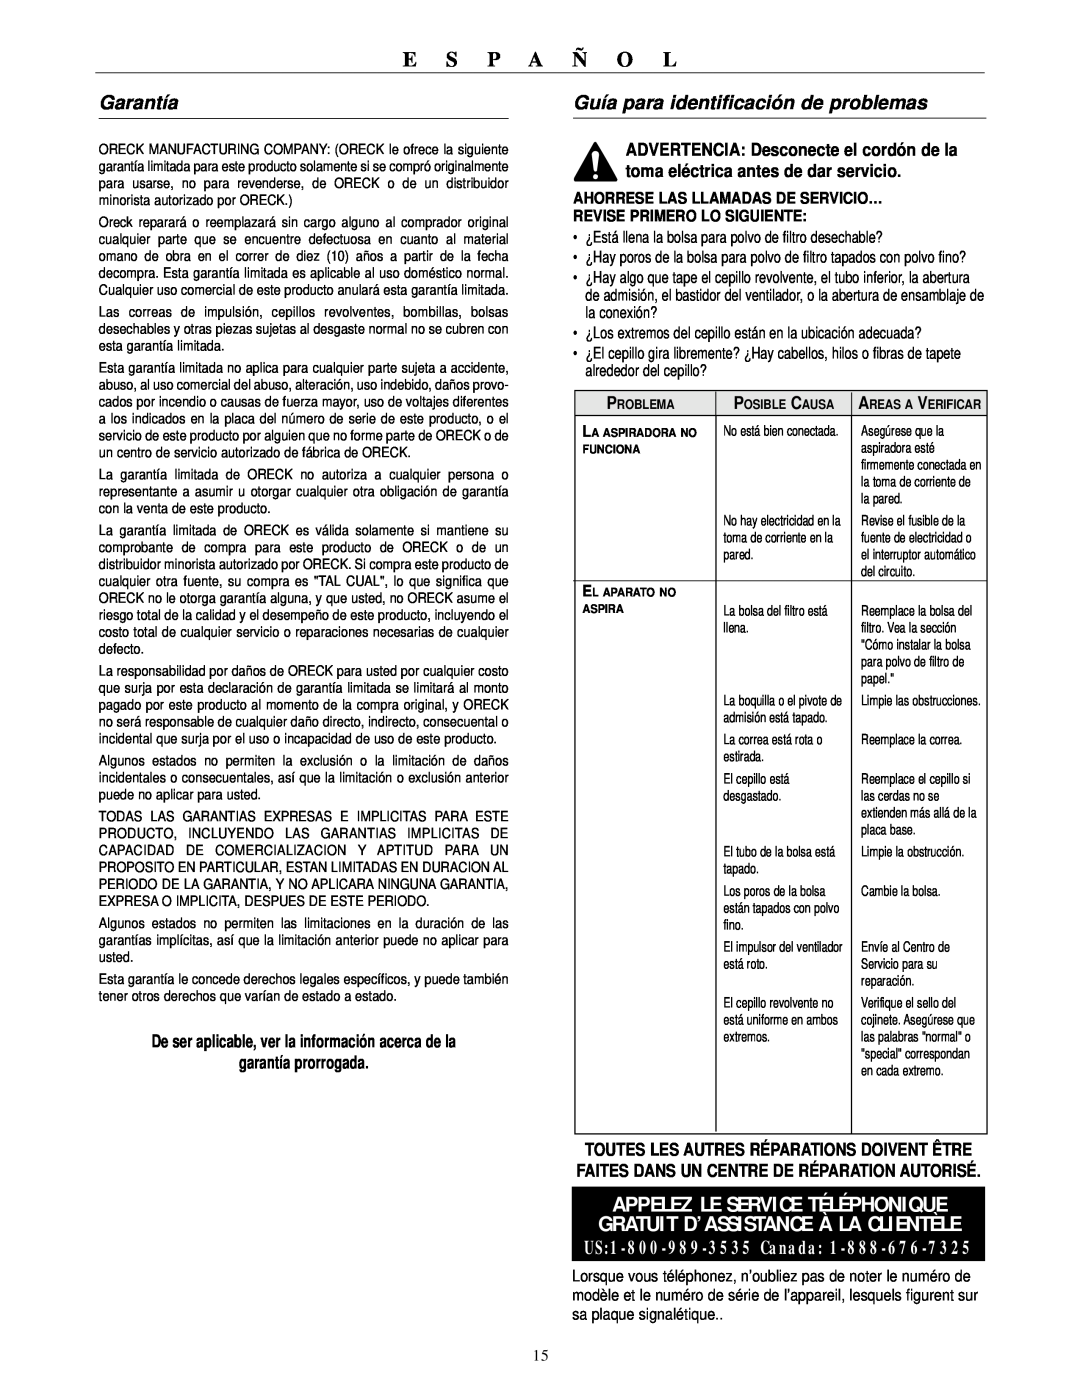 Oreck XL21 600 ECB Garantía, Guía para identificación de problemas, E S P A Ñ O L, Ahorrese Las Llamadas De Servicio… 